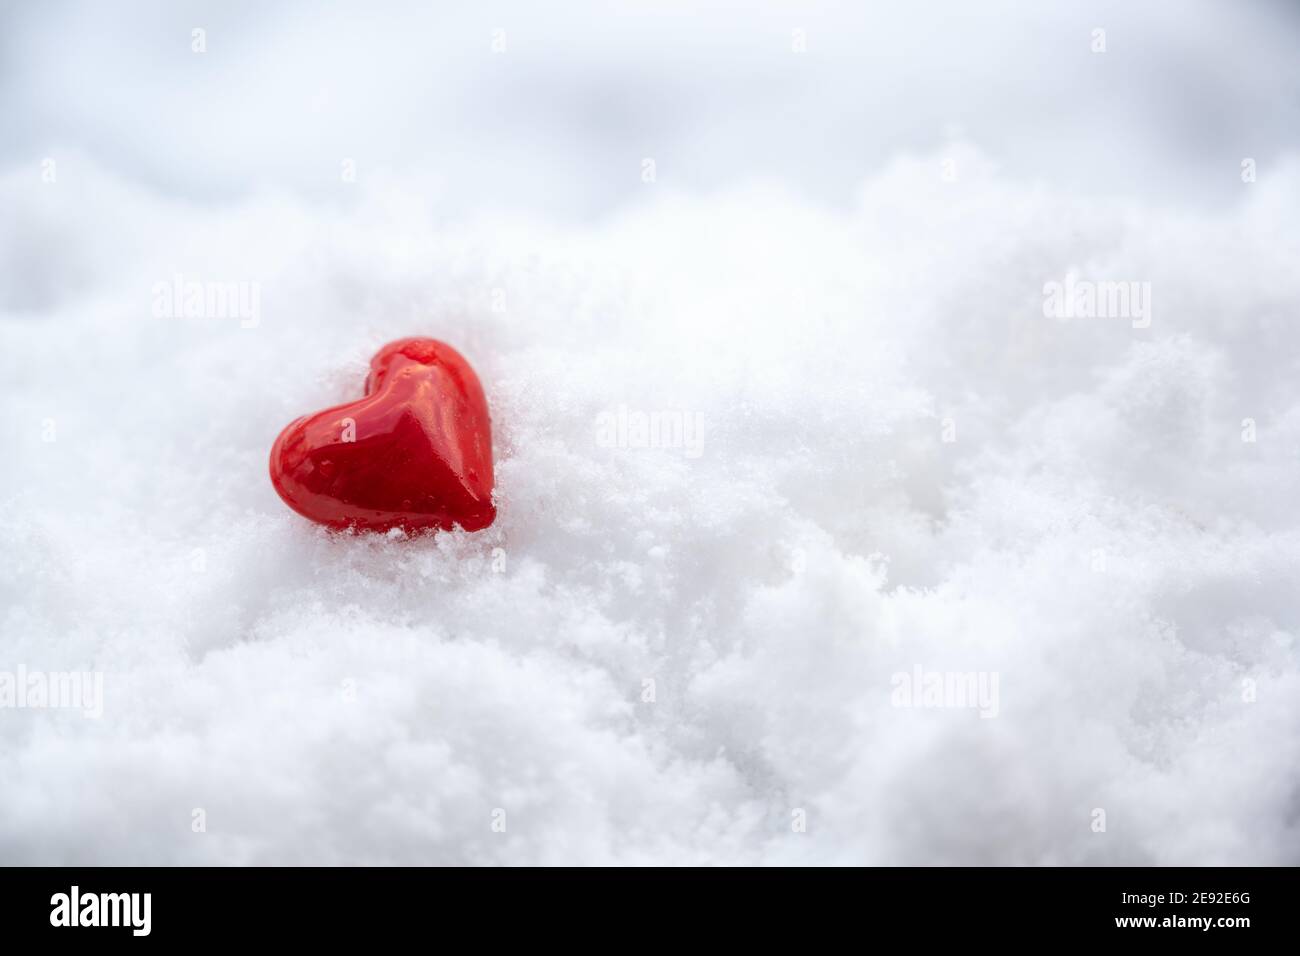 Petit coeur rouge de verre couché dans la neige blanche, symbole de l'amour pour la Saint Valentin avec grand espace de copie, mise au point sélectionnée, profondeur de champ étroite Banque D'Images